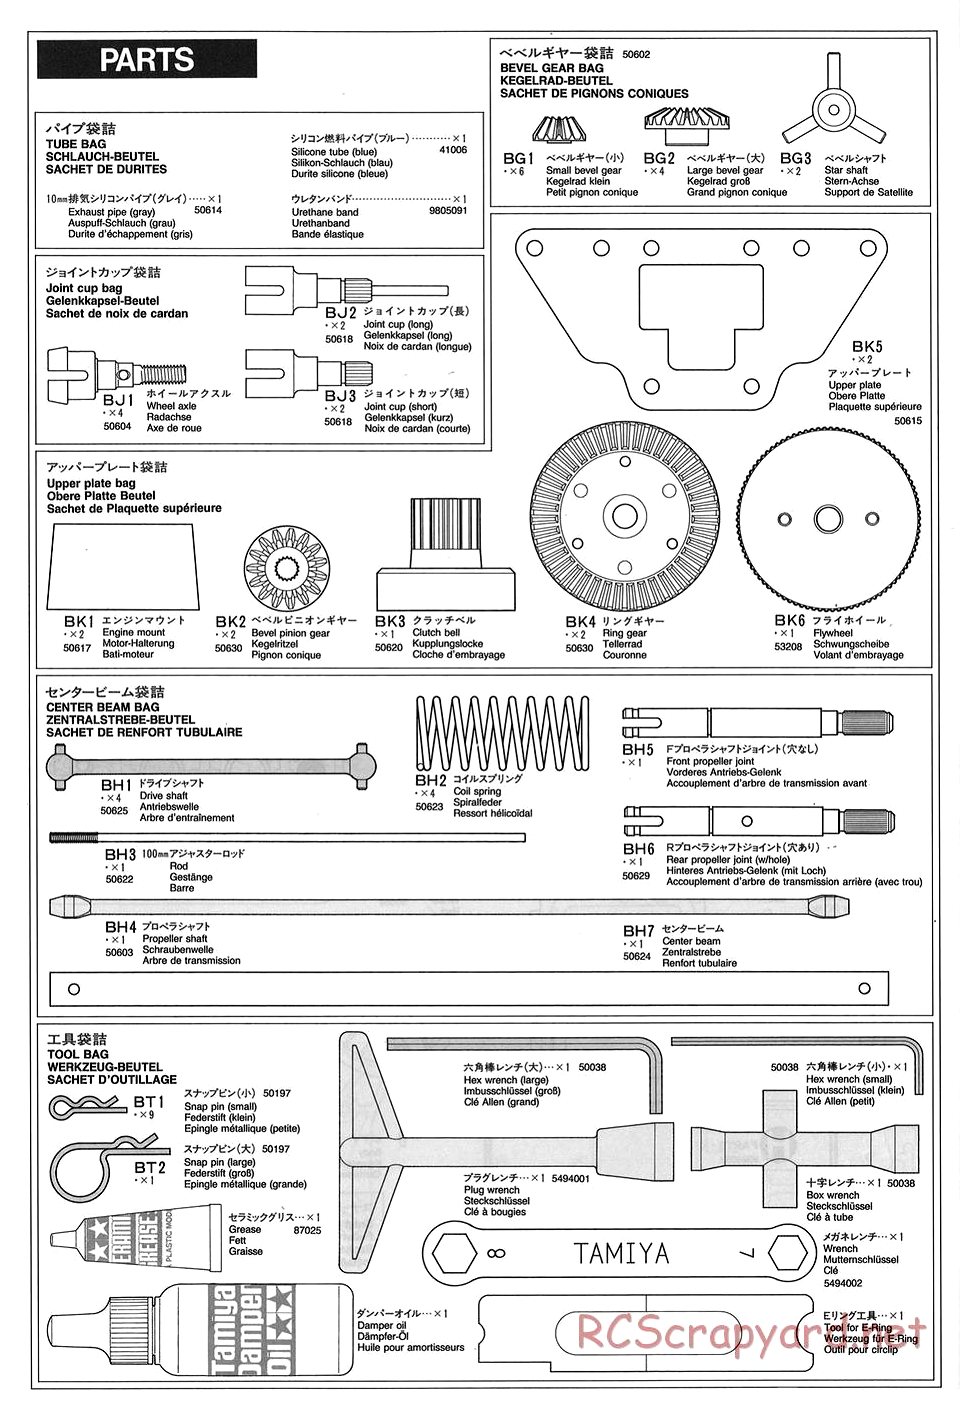 Tamiya - TGX Mk.1 Chassis - Manual - Page 27